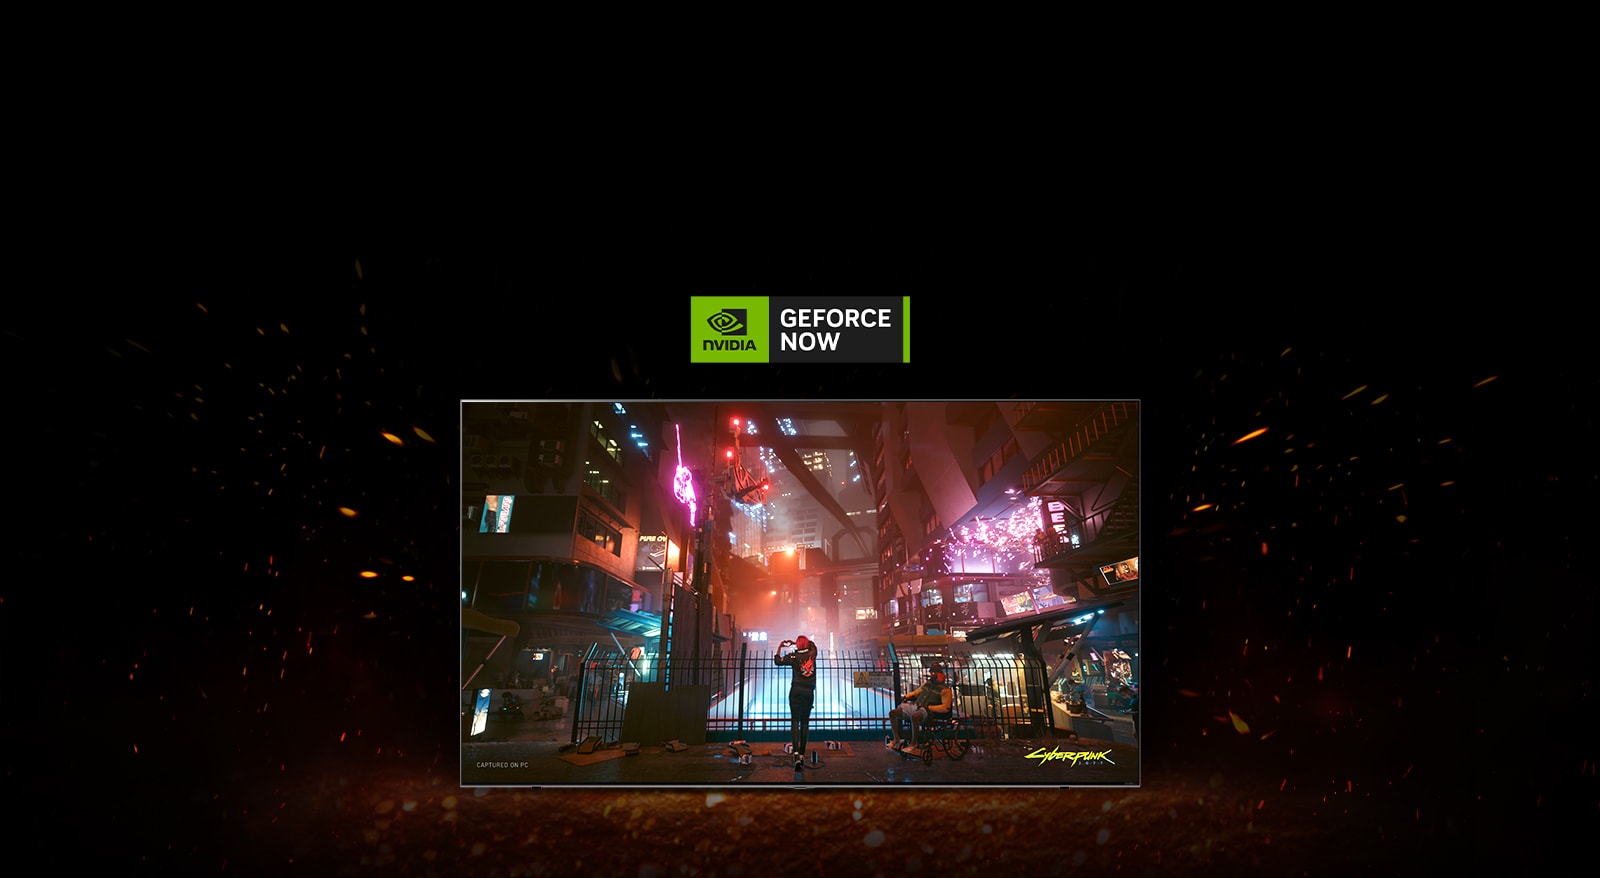 Vlammen laaien op rond de tv en je ziet het spelscherm van Cyberpunk erin. Er staat nu een Geforce logo op de bovenkant van de tv.